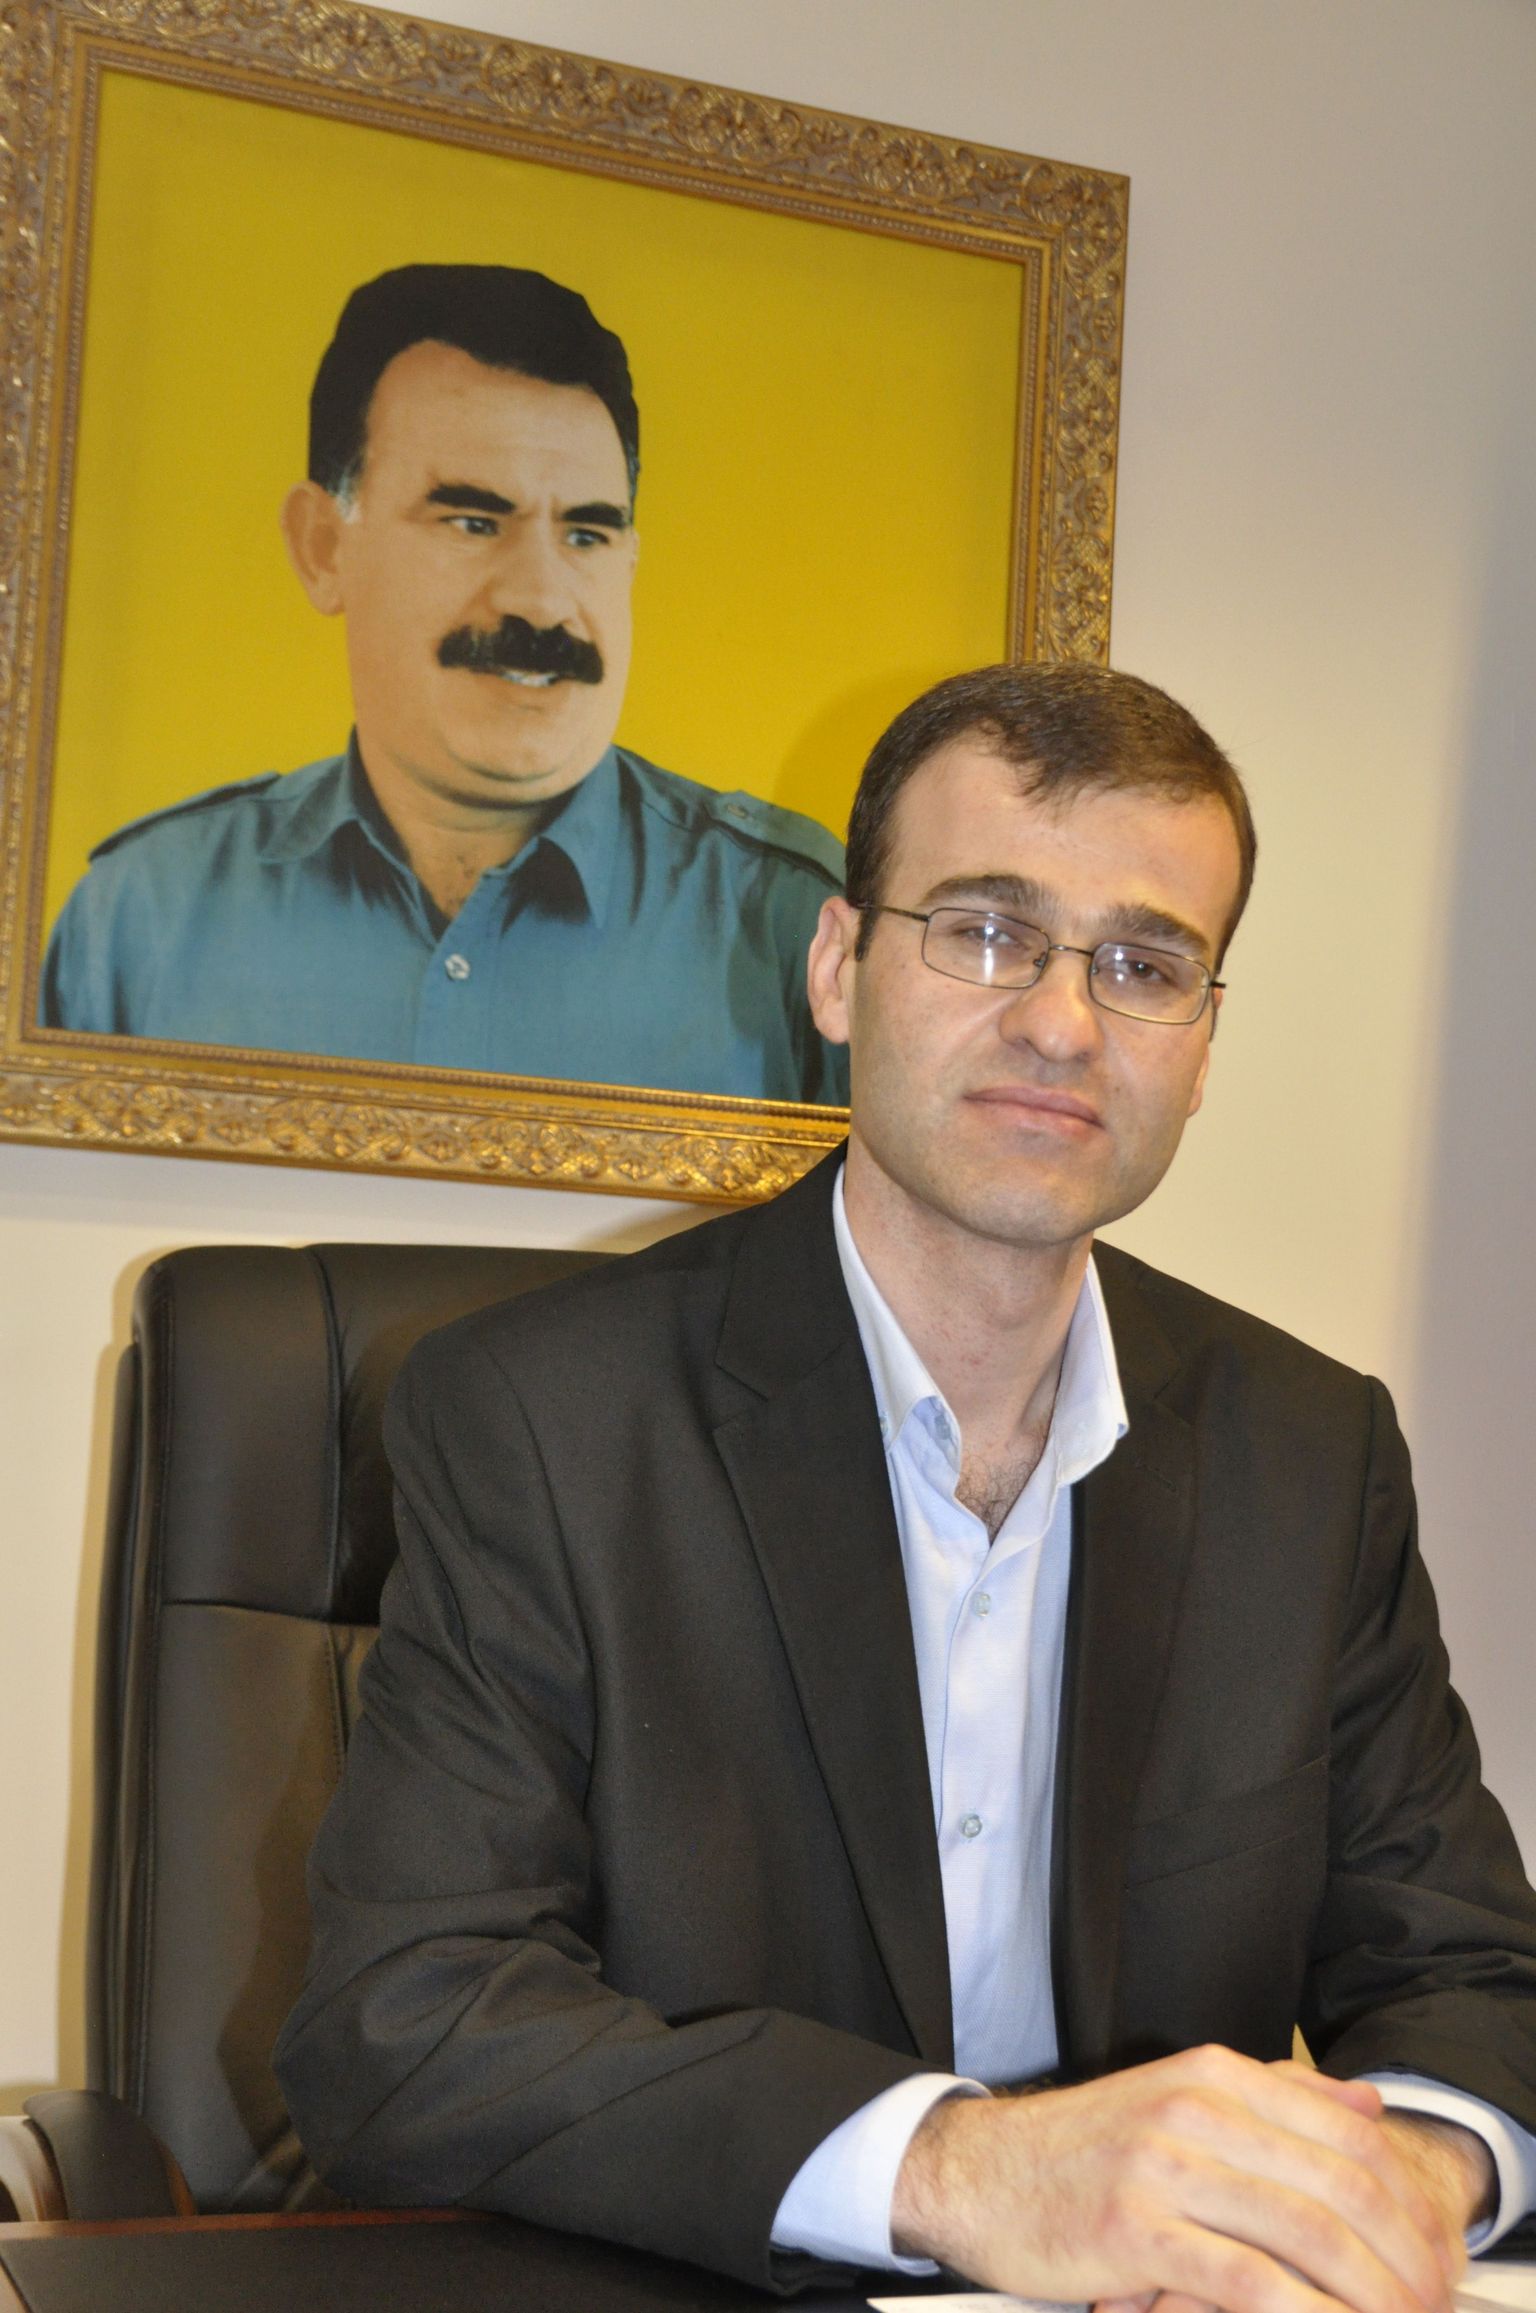 Süüria kurdide Moskva-esinduse juht poseerib kõigile külalistele hea meelega Abdullah Öcalani portree all.